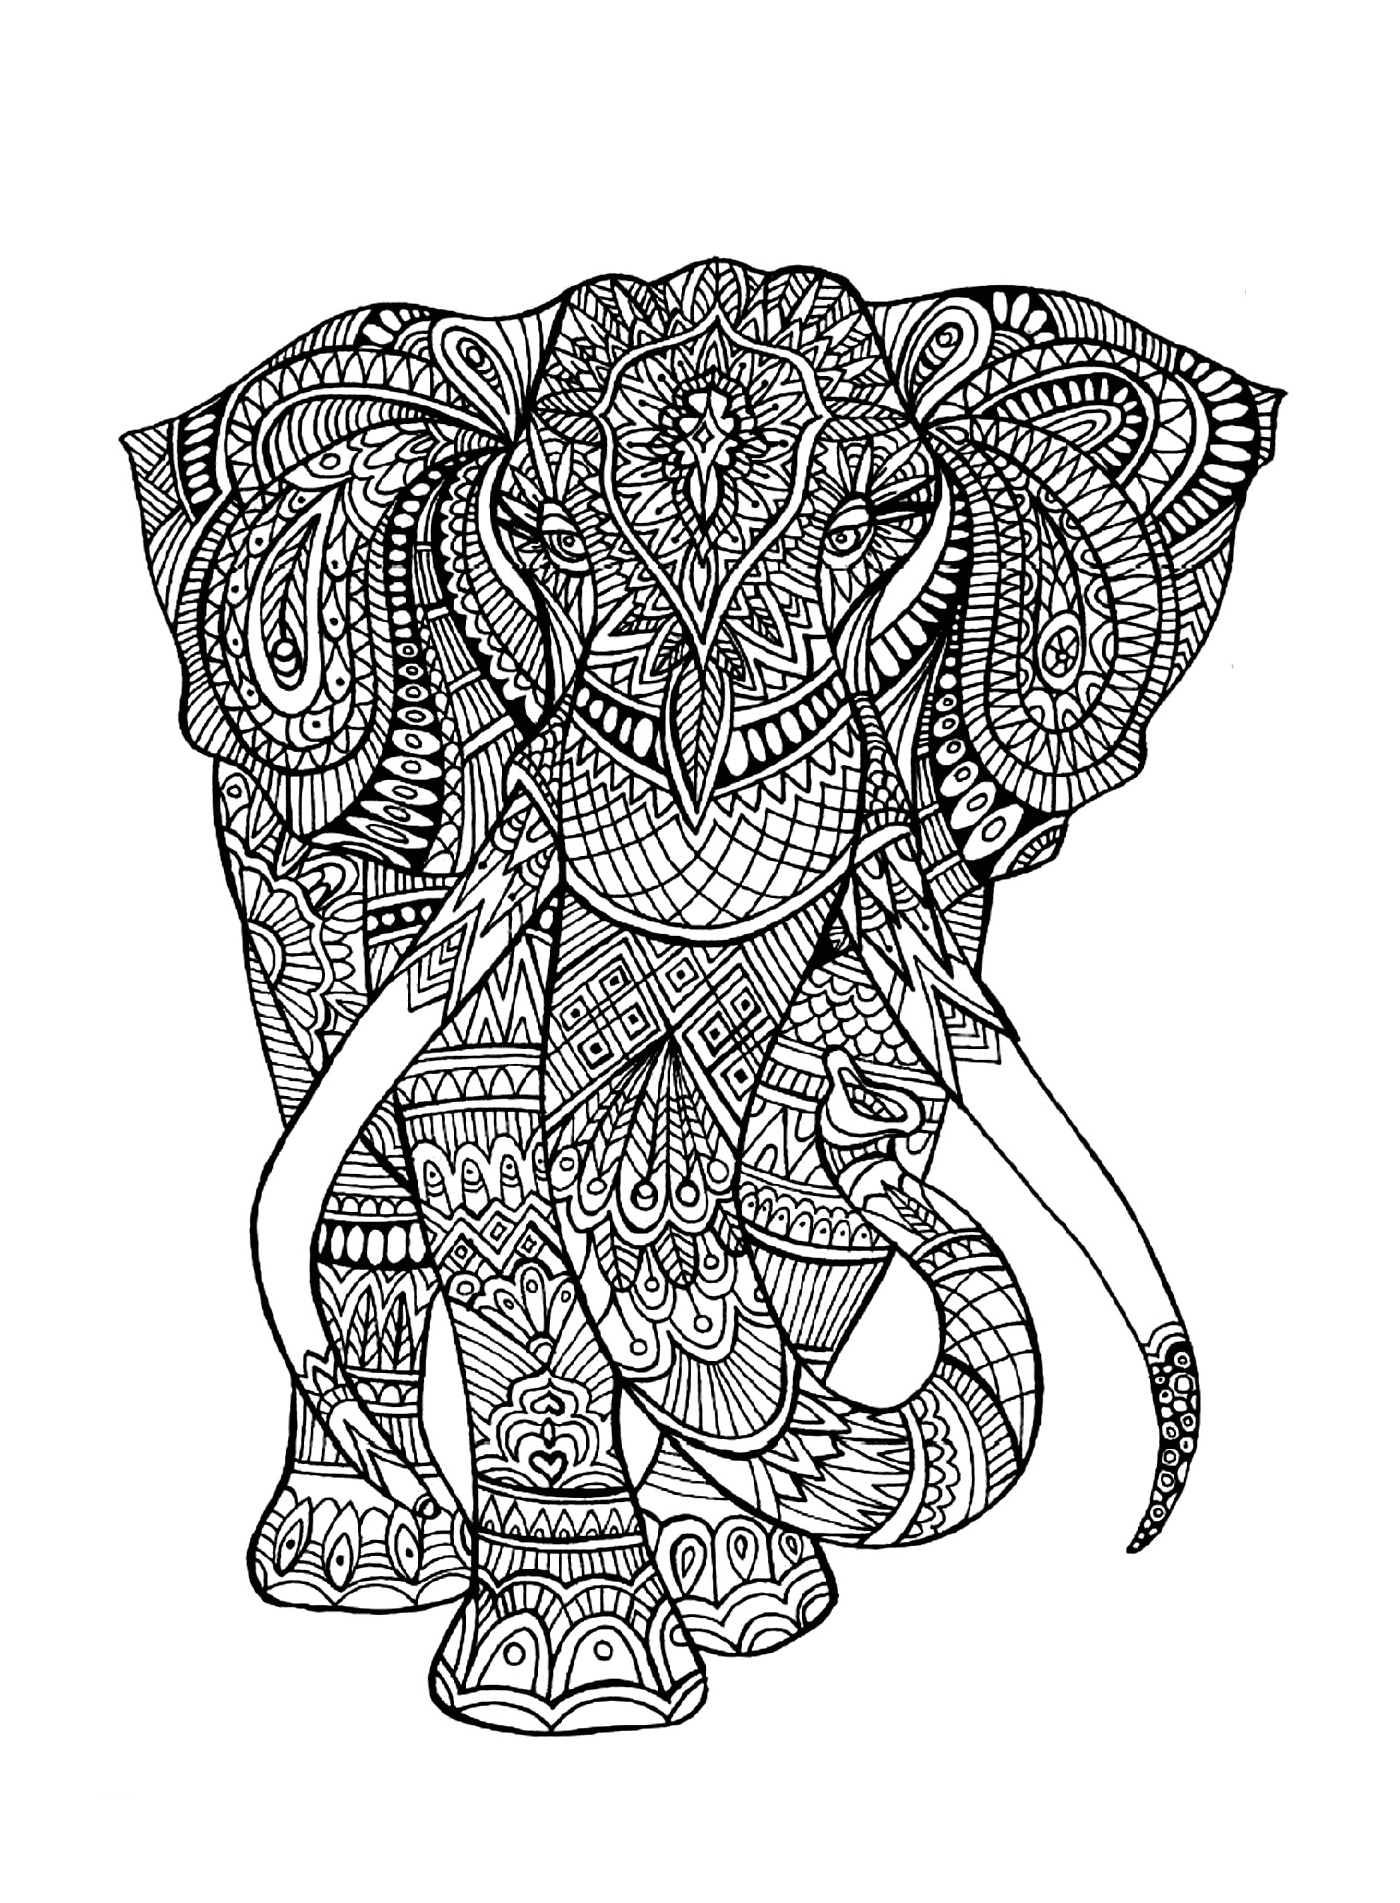  Un elefante con schemi complessi sul suo corpo 